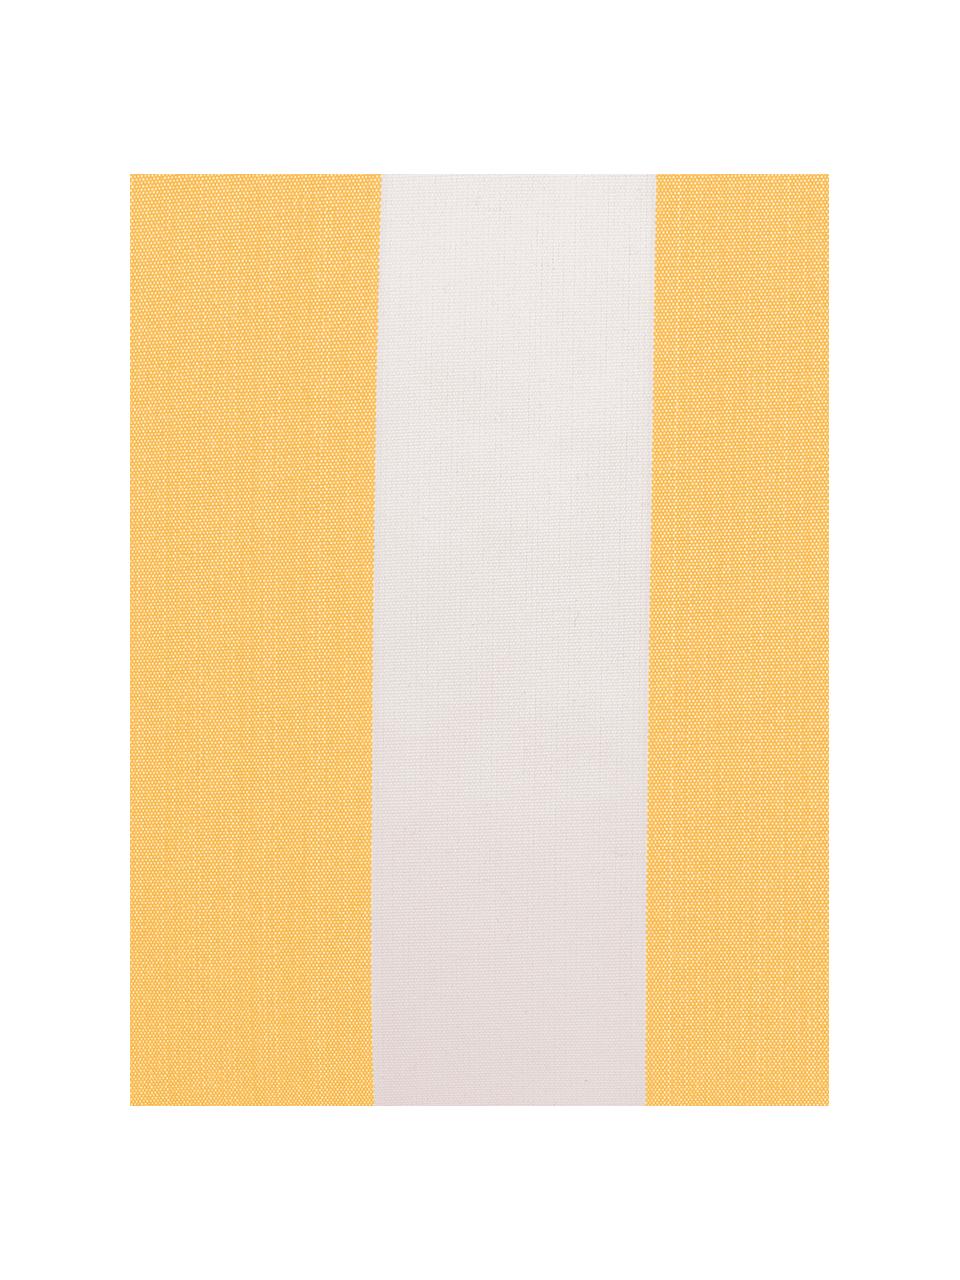 Poszewka na poduszkę zewnętrzną Santorin, 100% polipropylen, Teflon® powlekany, Żółty, biały, S 40 x D 40 cm